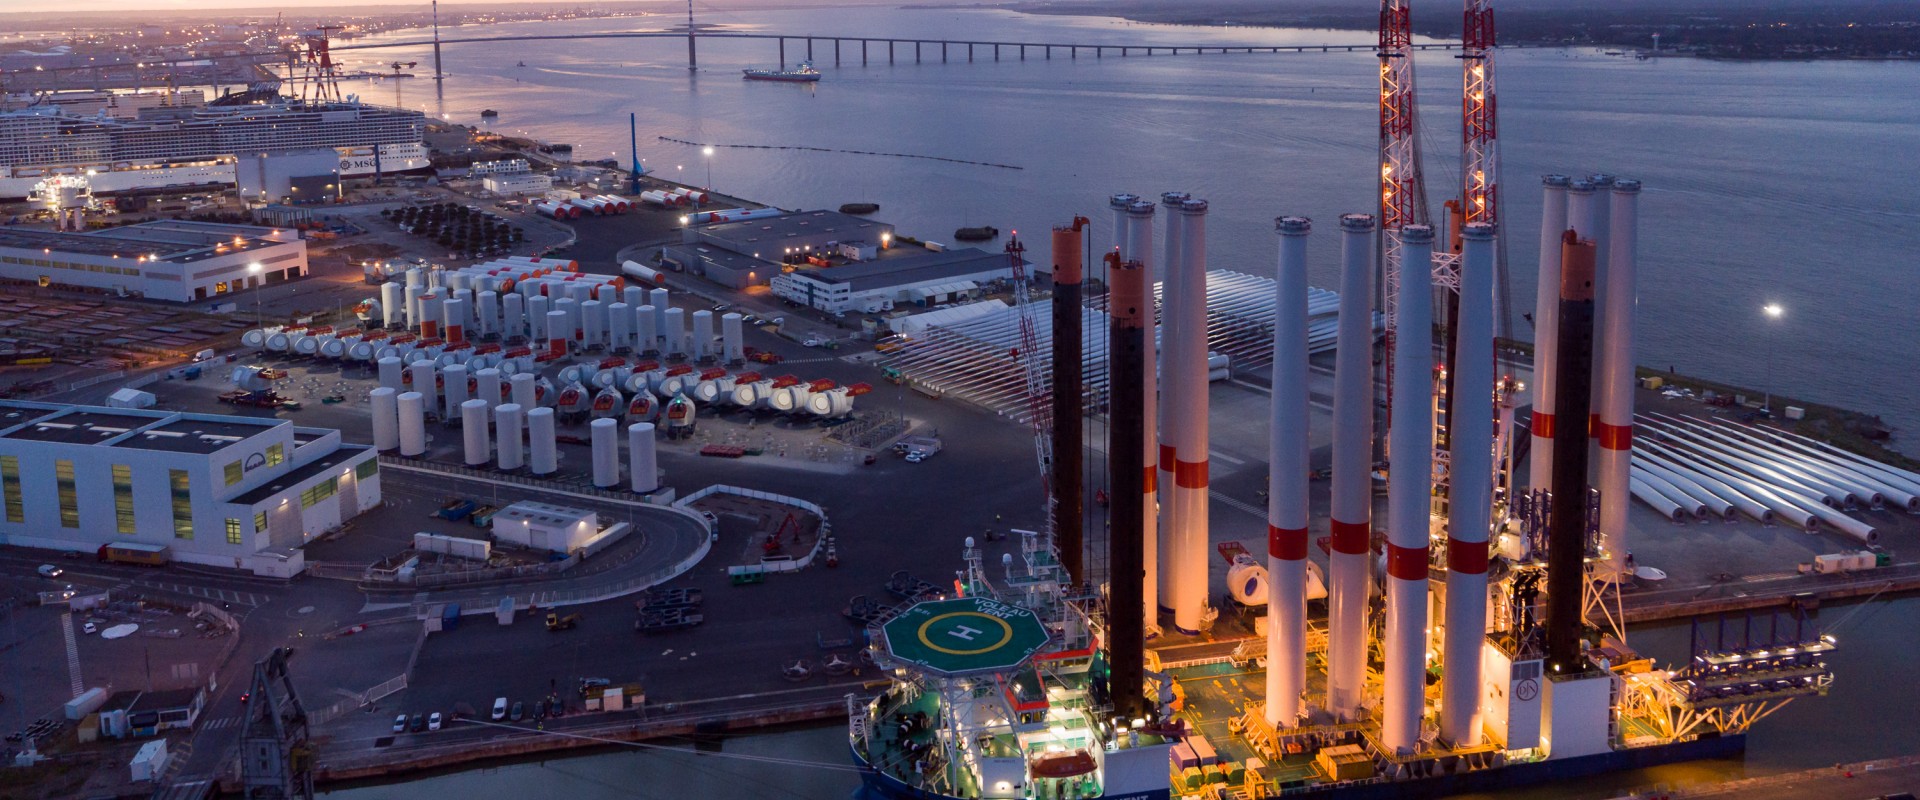 Le port de Saint-Nazaire choisi pour l'installation du parc éolien EMYN